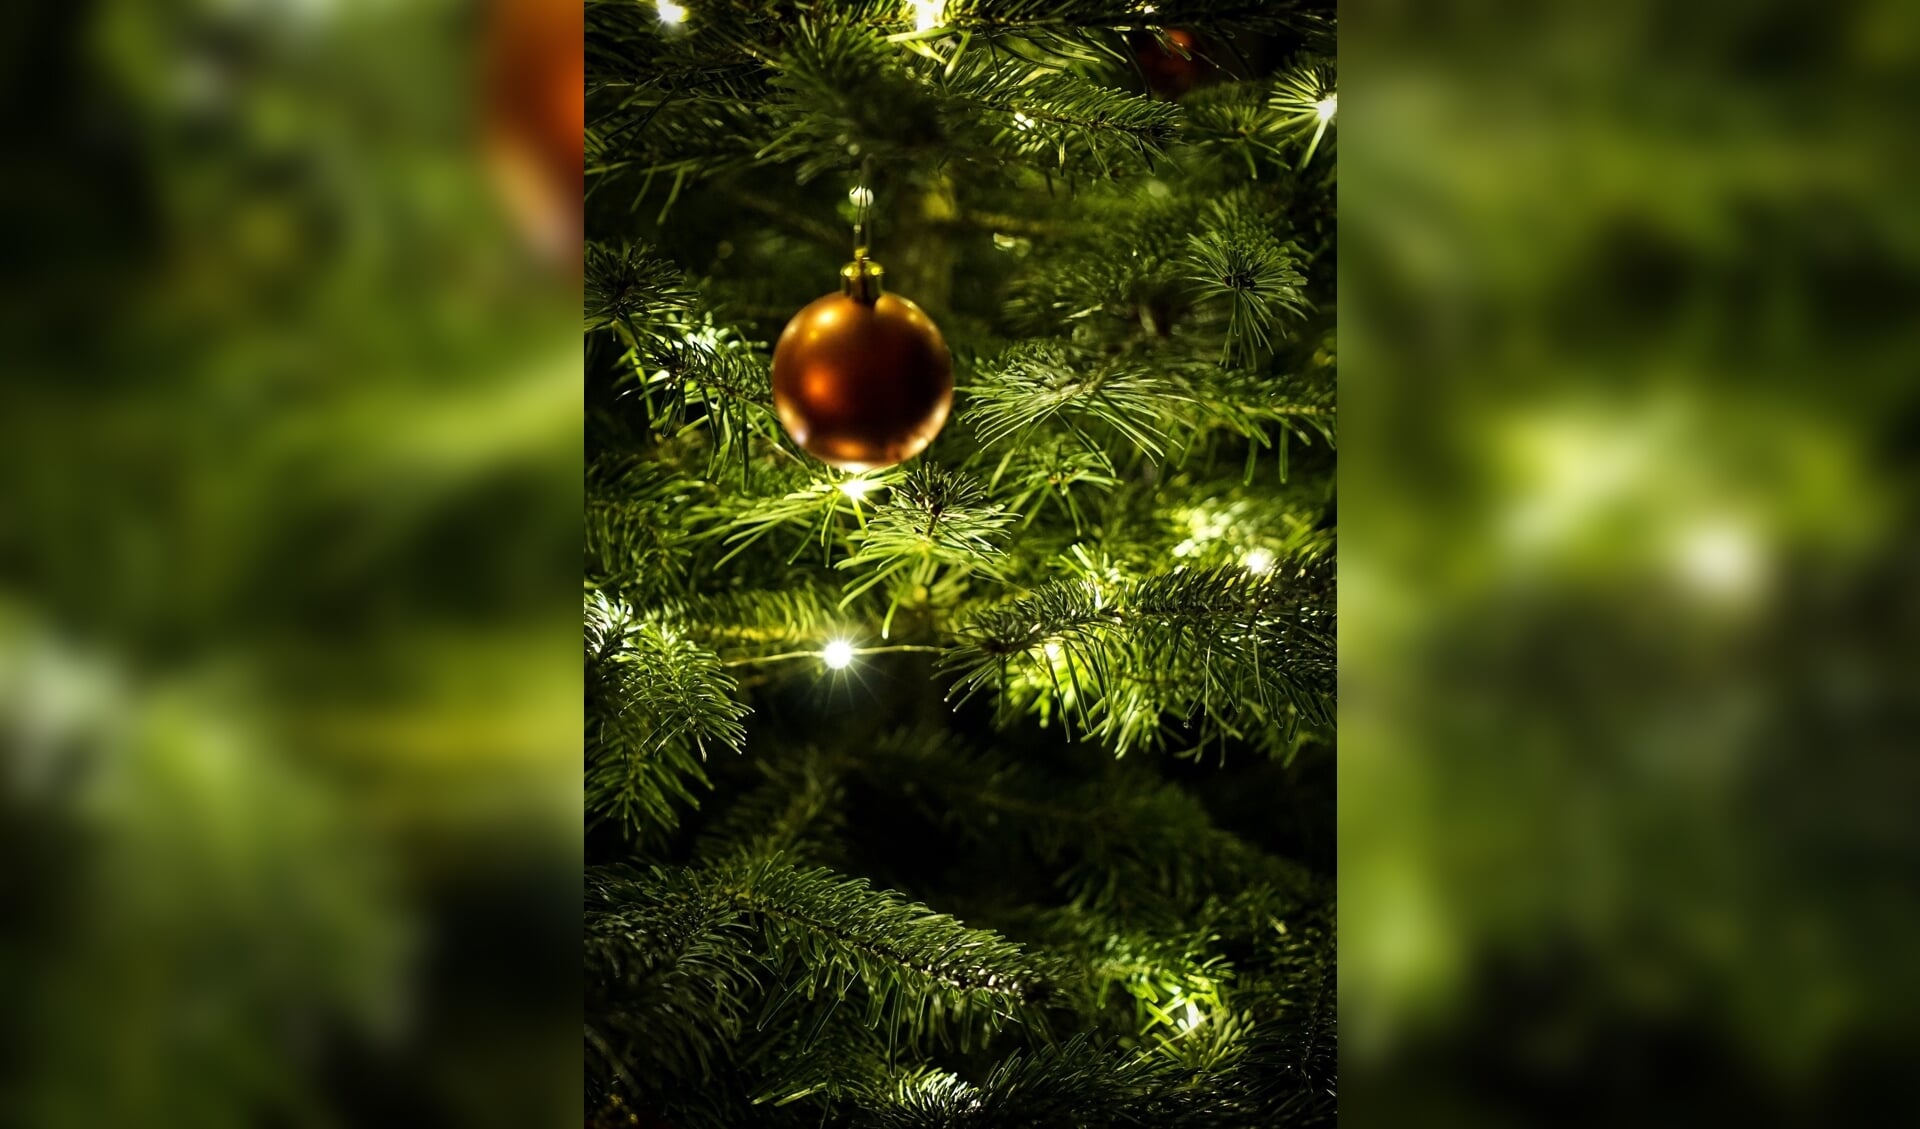 Breng licht in donkere tijden door je kerstboom buiten te zetten.